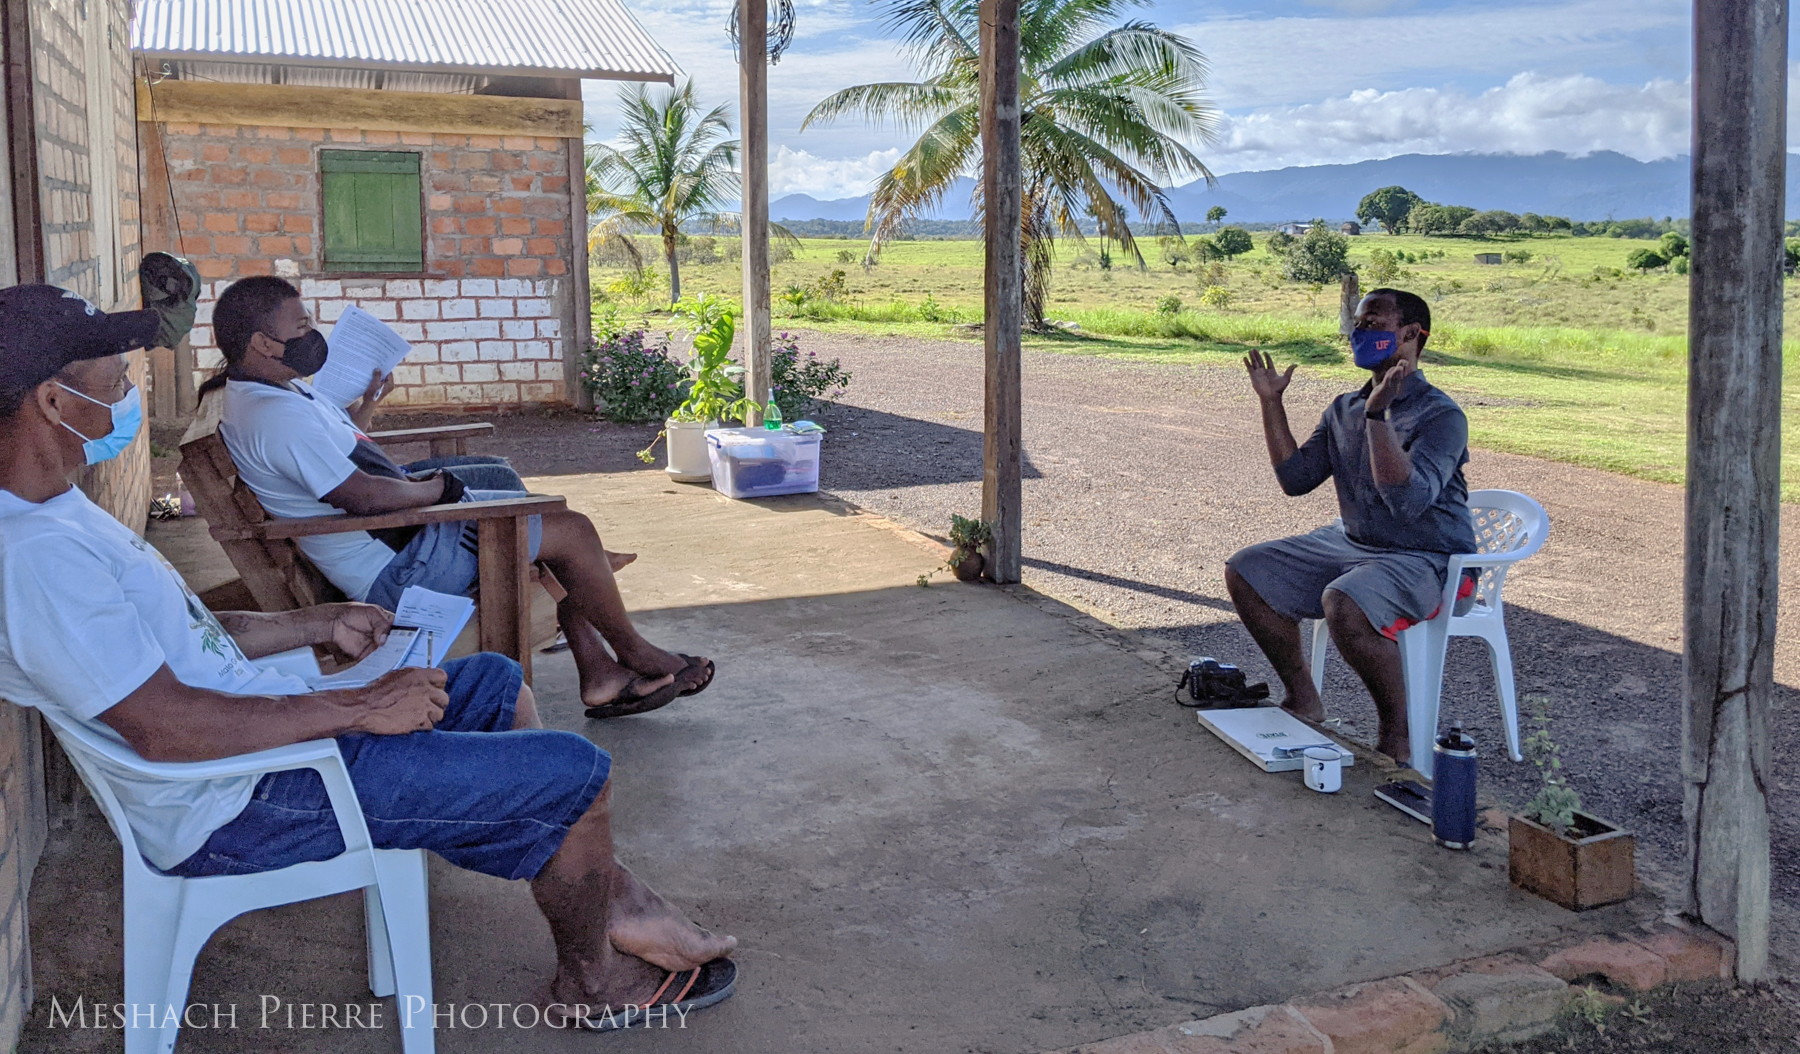 Human-jaguar conflict research team at Karasabai village